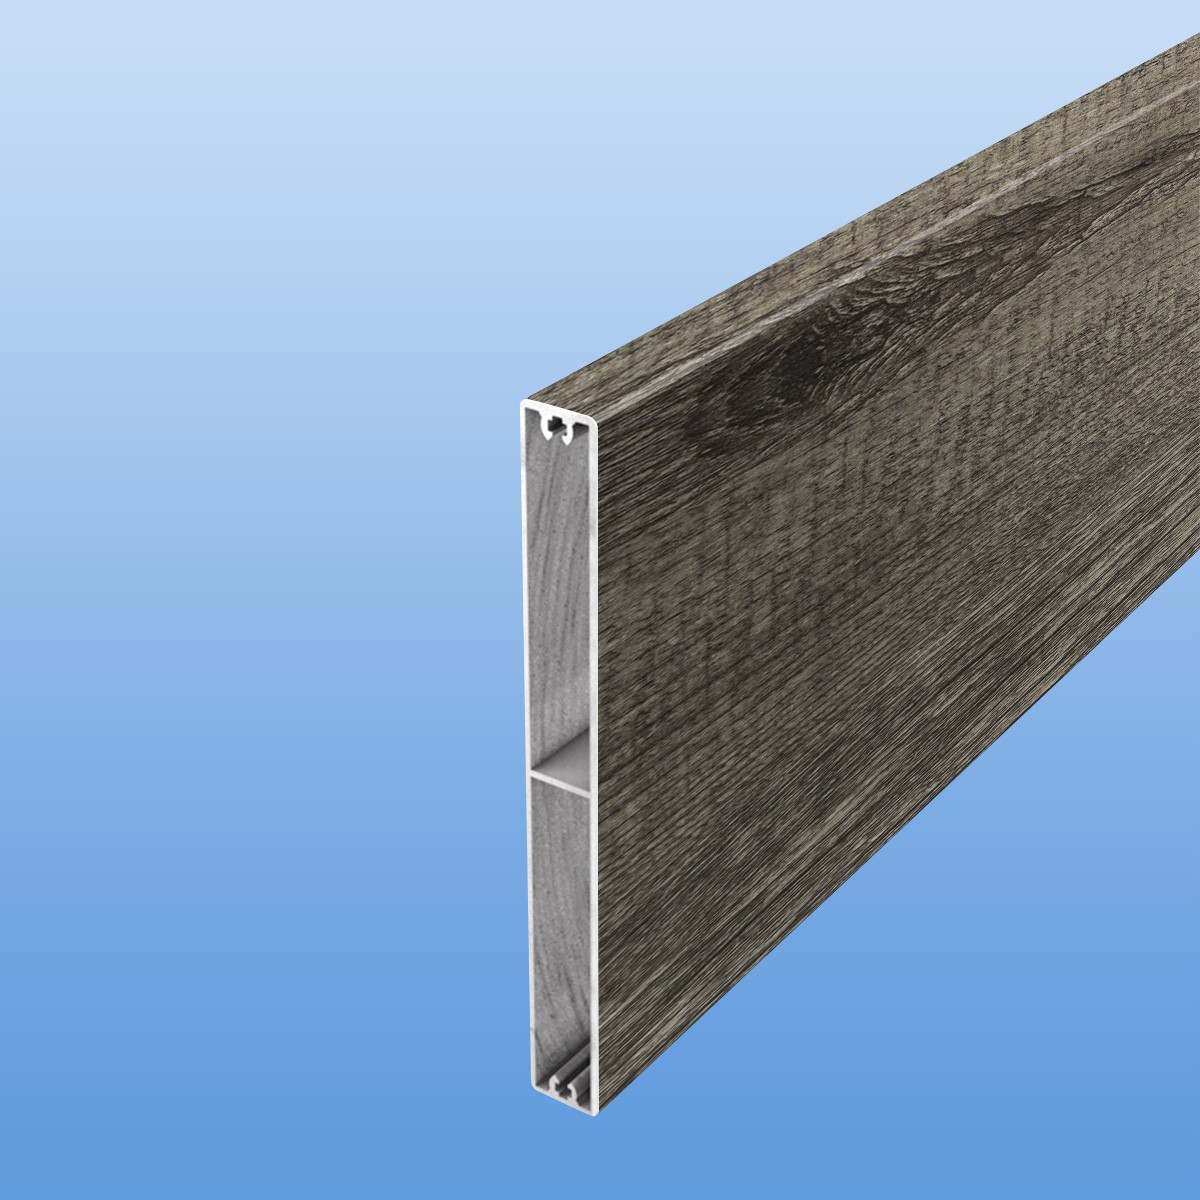 Zaunplanke aus Aluminium 150 mm breit in Holzoptik (Treibholz)